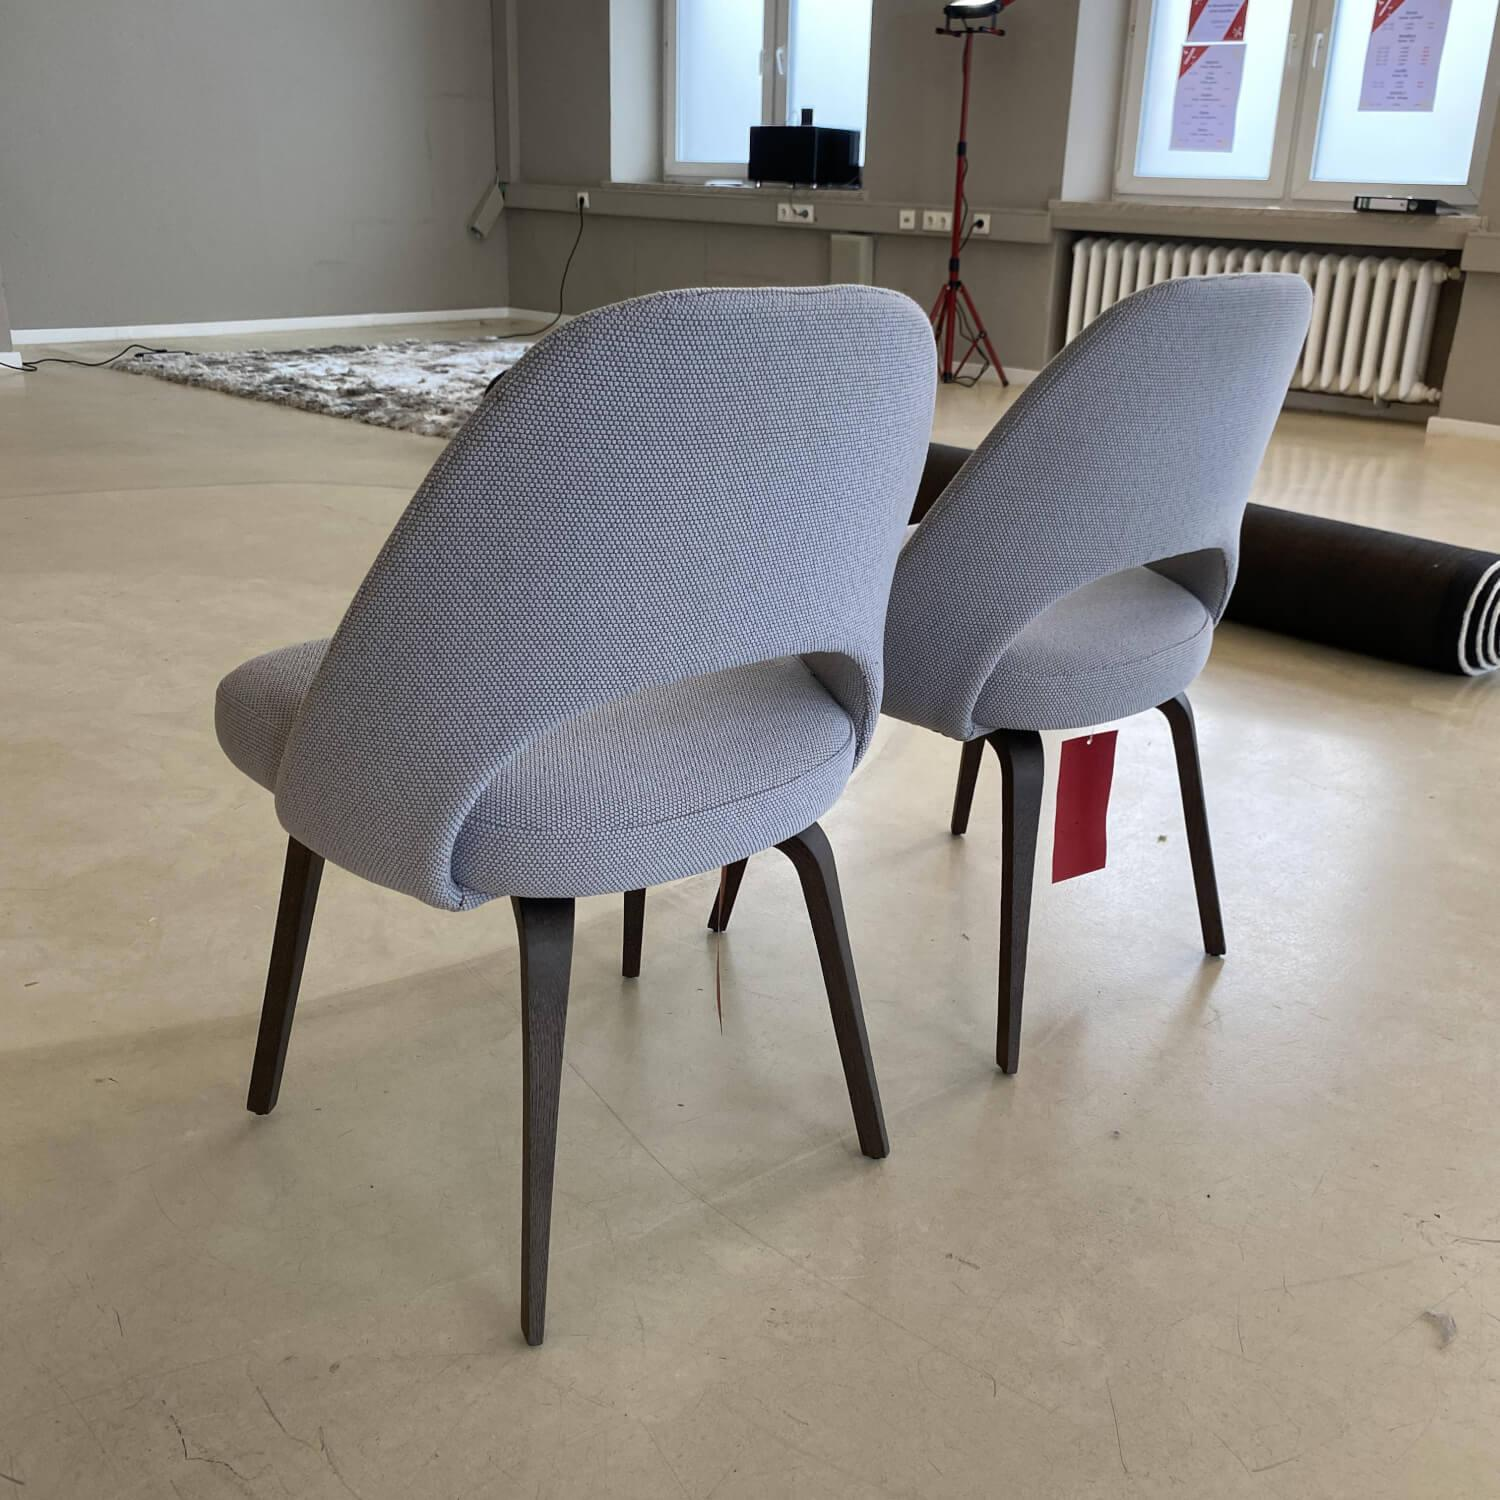 Esstischgruppe Gueridon Table Eiche Dunkel Massiv Naturholz Schutzlack gebeizt mit 2 Saarinen Conference Stühlen